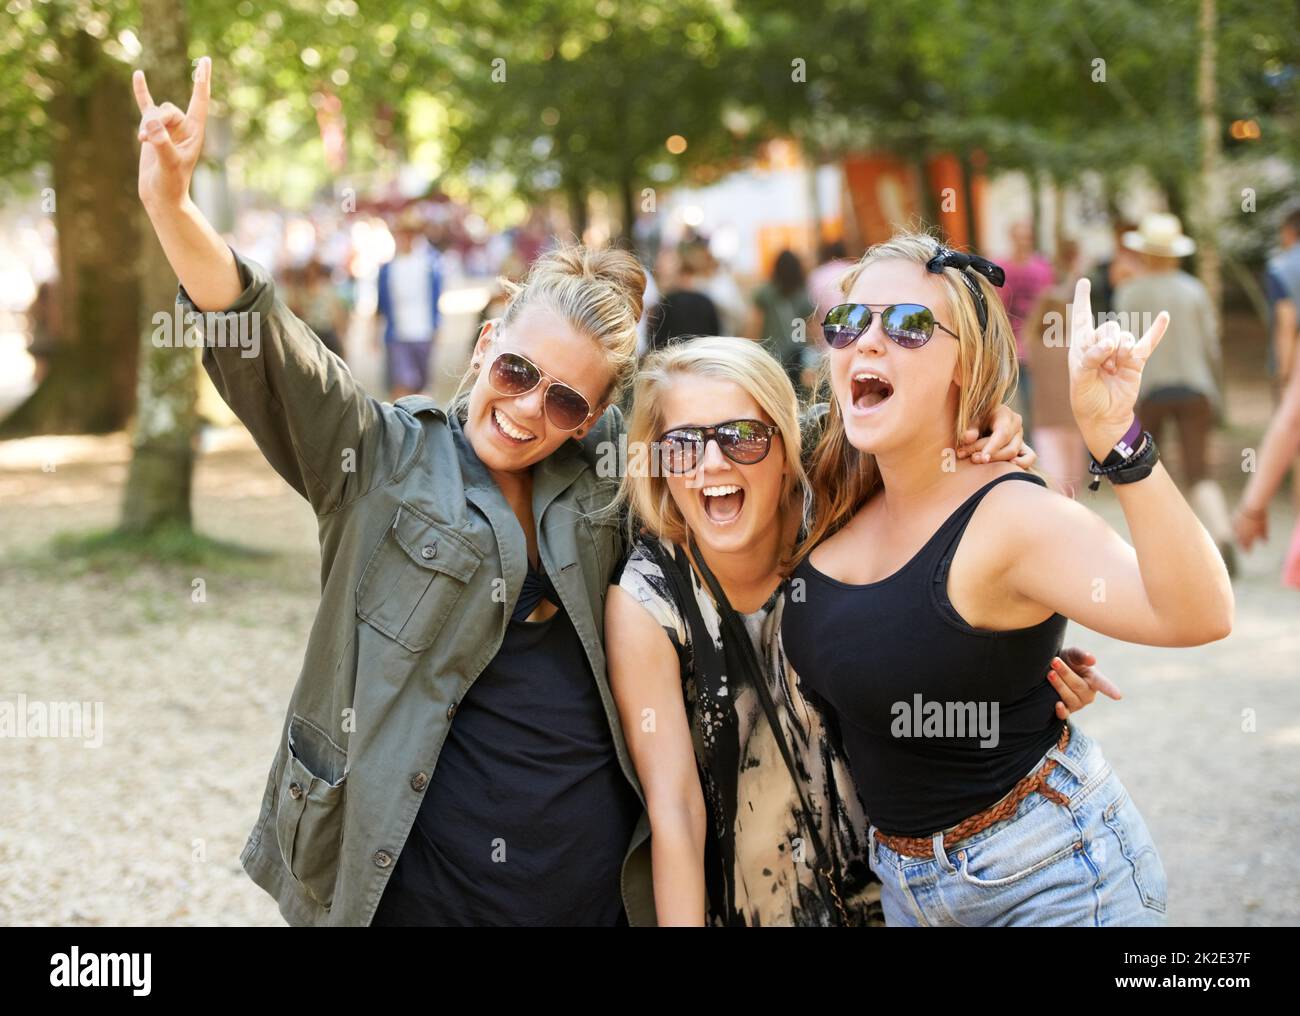 Dandogli avvisatori acustici. Tre amiche che festeggiano un festival musicale all'aperto. Foto Stock